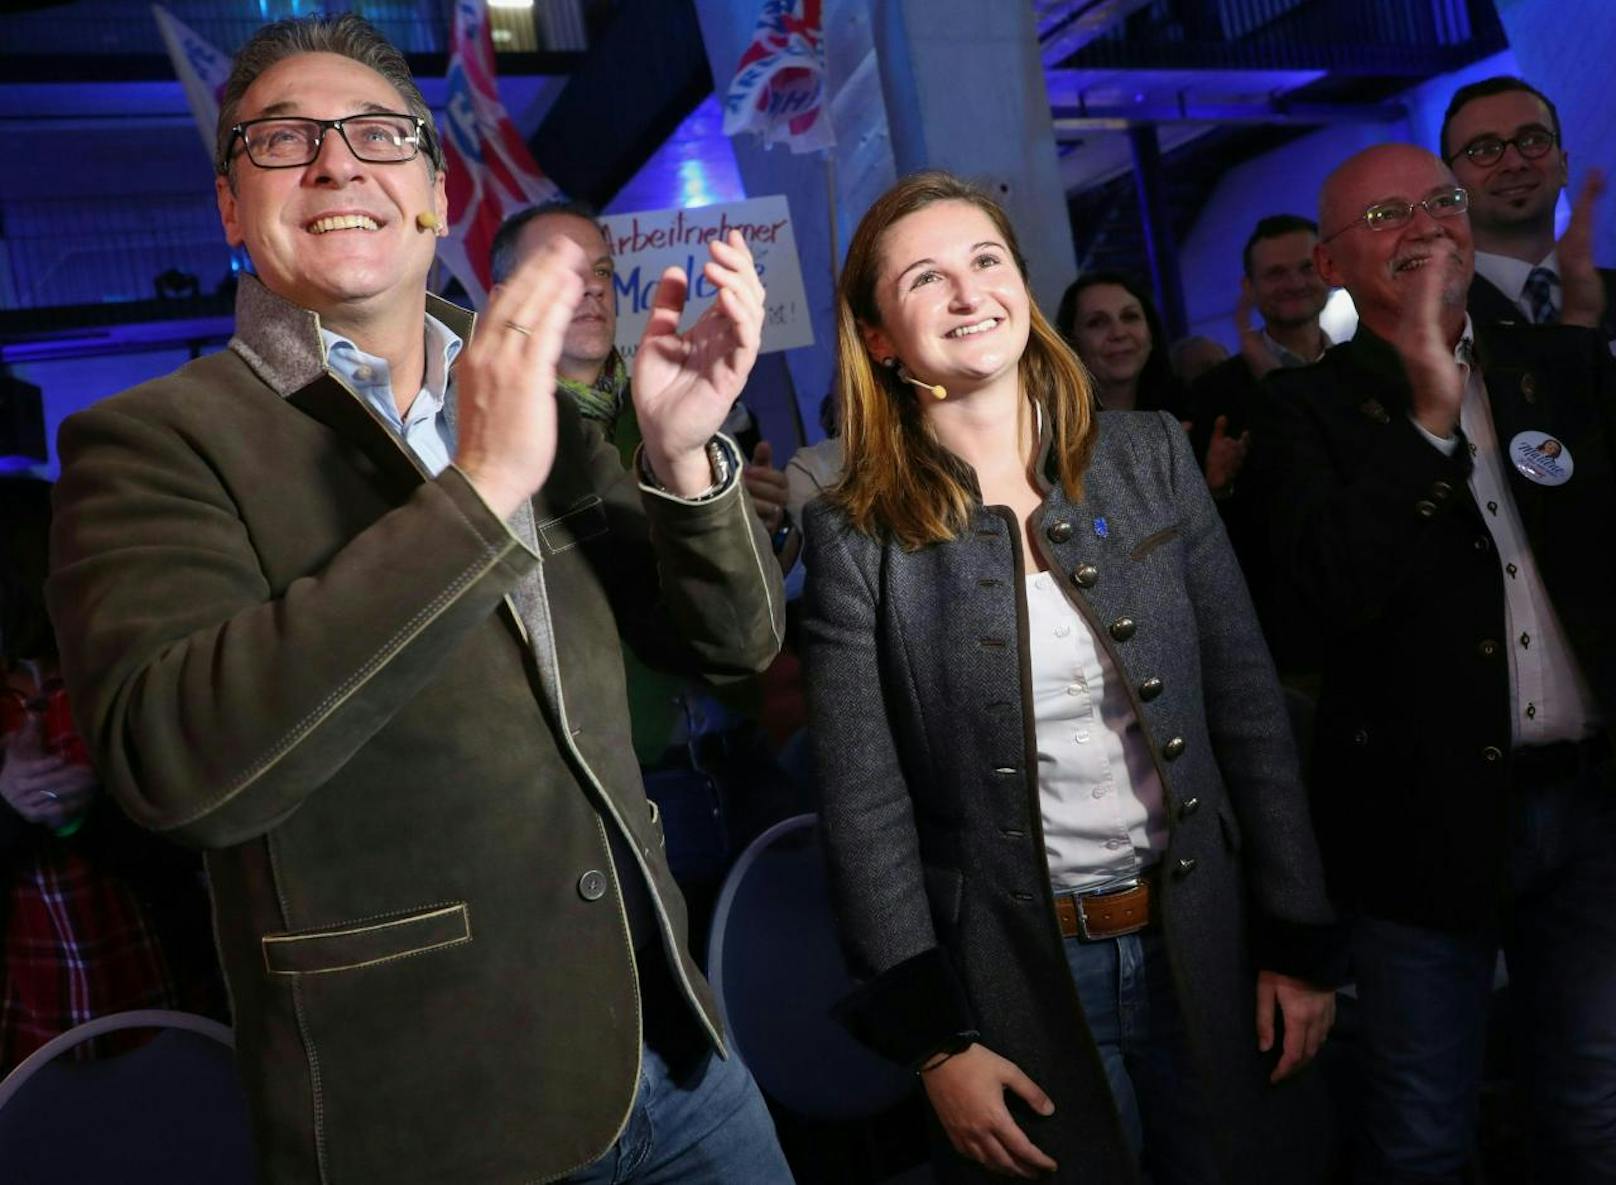 Wahlkampfauftakt der Salzburger FPÖ mit Vizekanzler Heinz-Christian Strache (FPÖ) und FPÖ-Generalsekretärin und Spitzenkandidatin Marlene Svazek am Freitag, 16. März 2018.